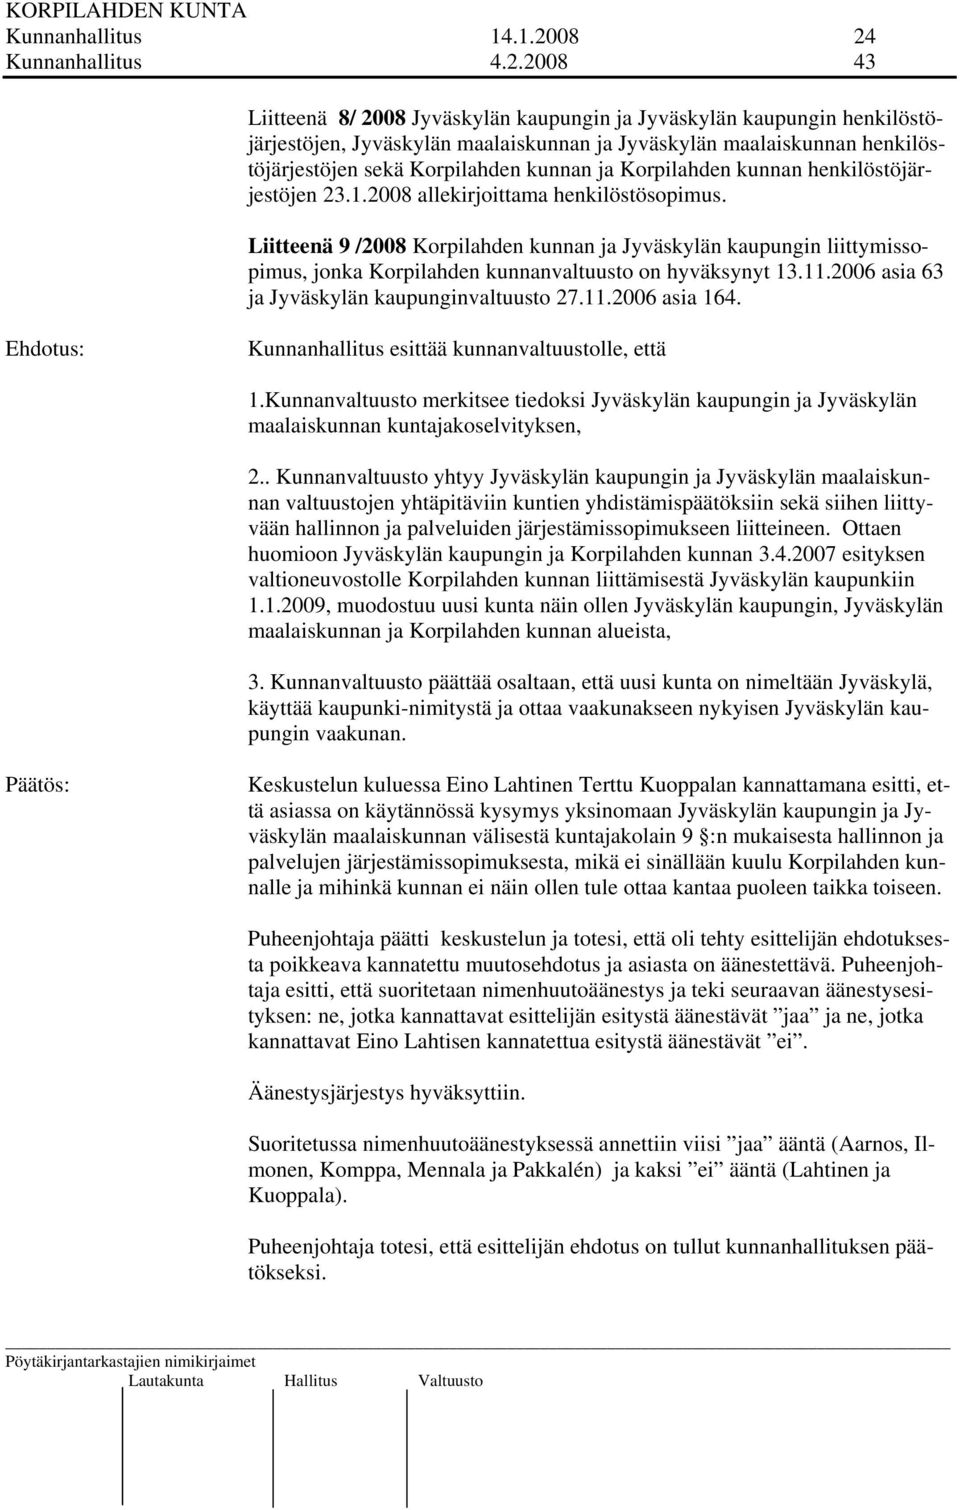 Korpilahden kunnan ja Korpilahden kunnan henkilöstöjärjestöjen 23.1.2008 allekirjoittama henkilöstösopimus.